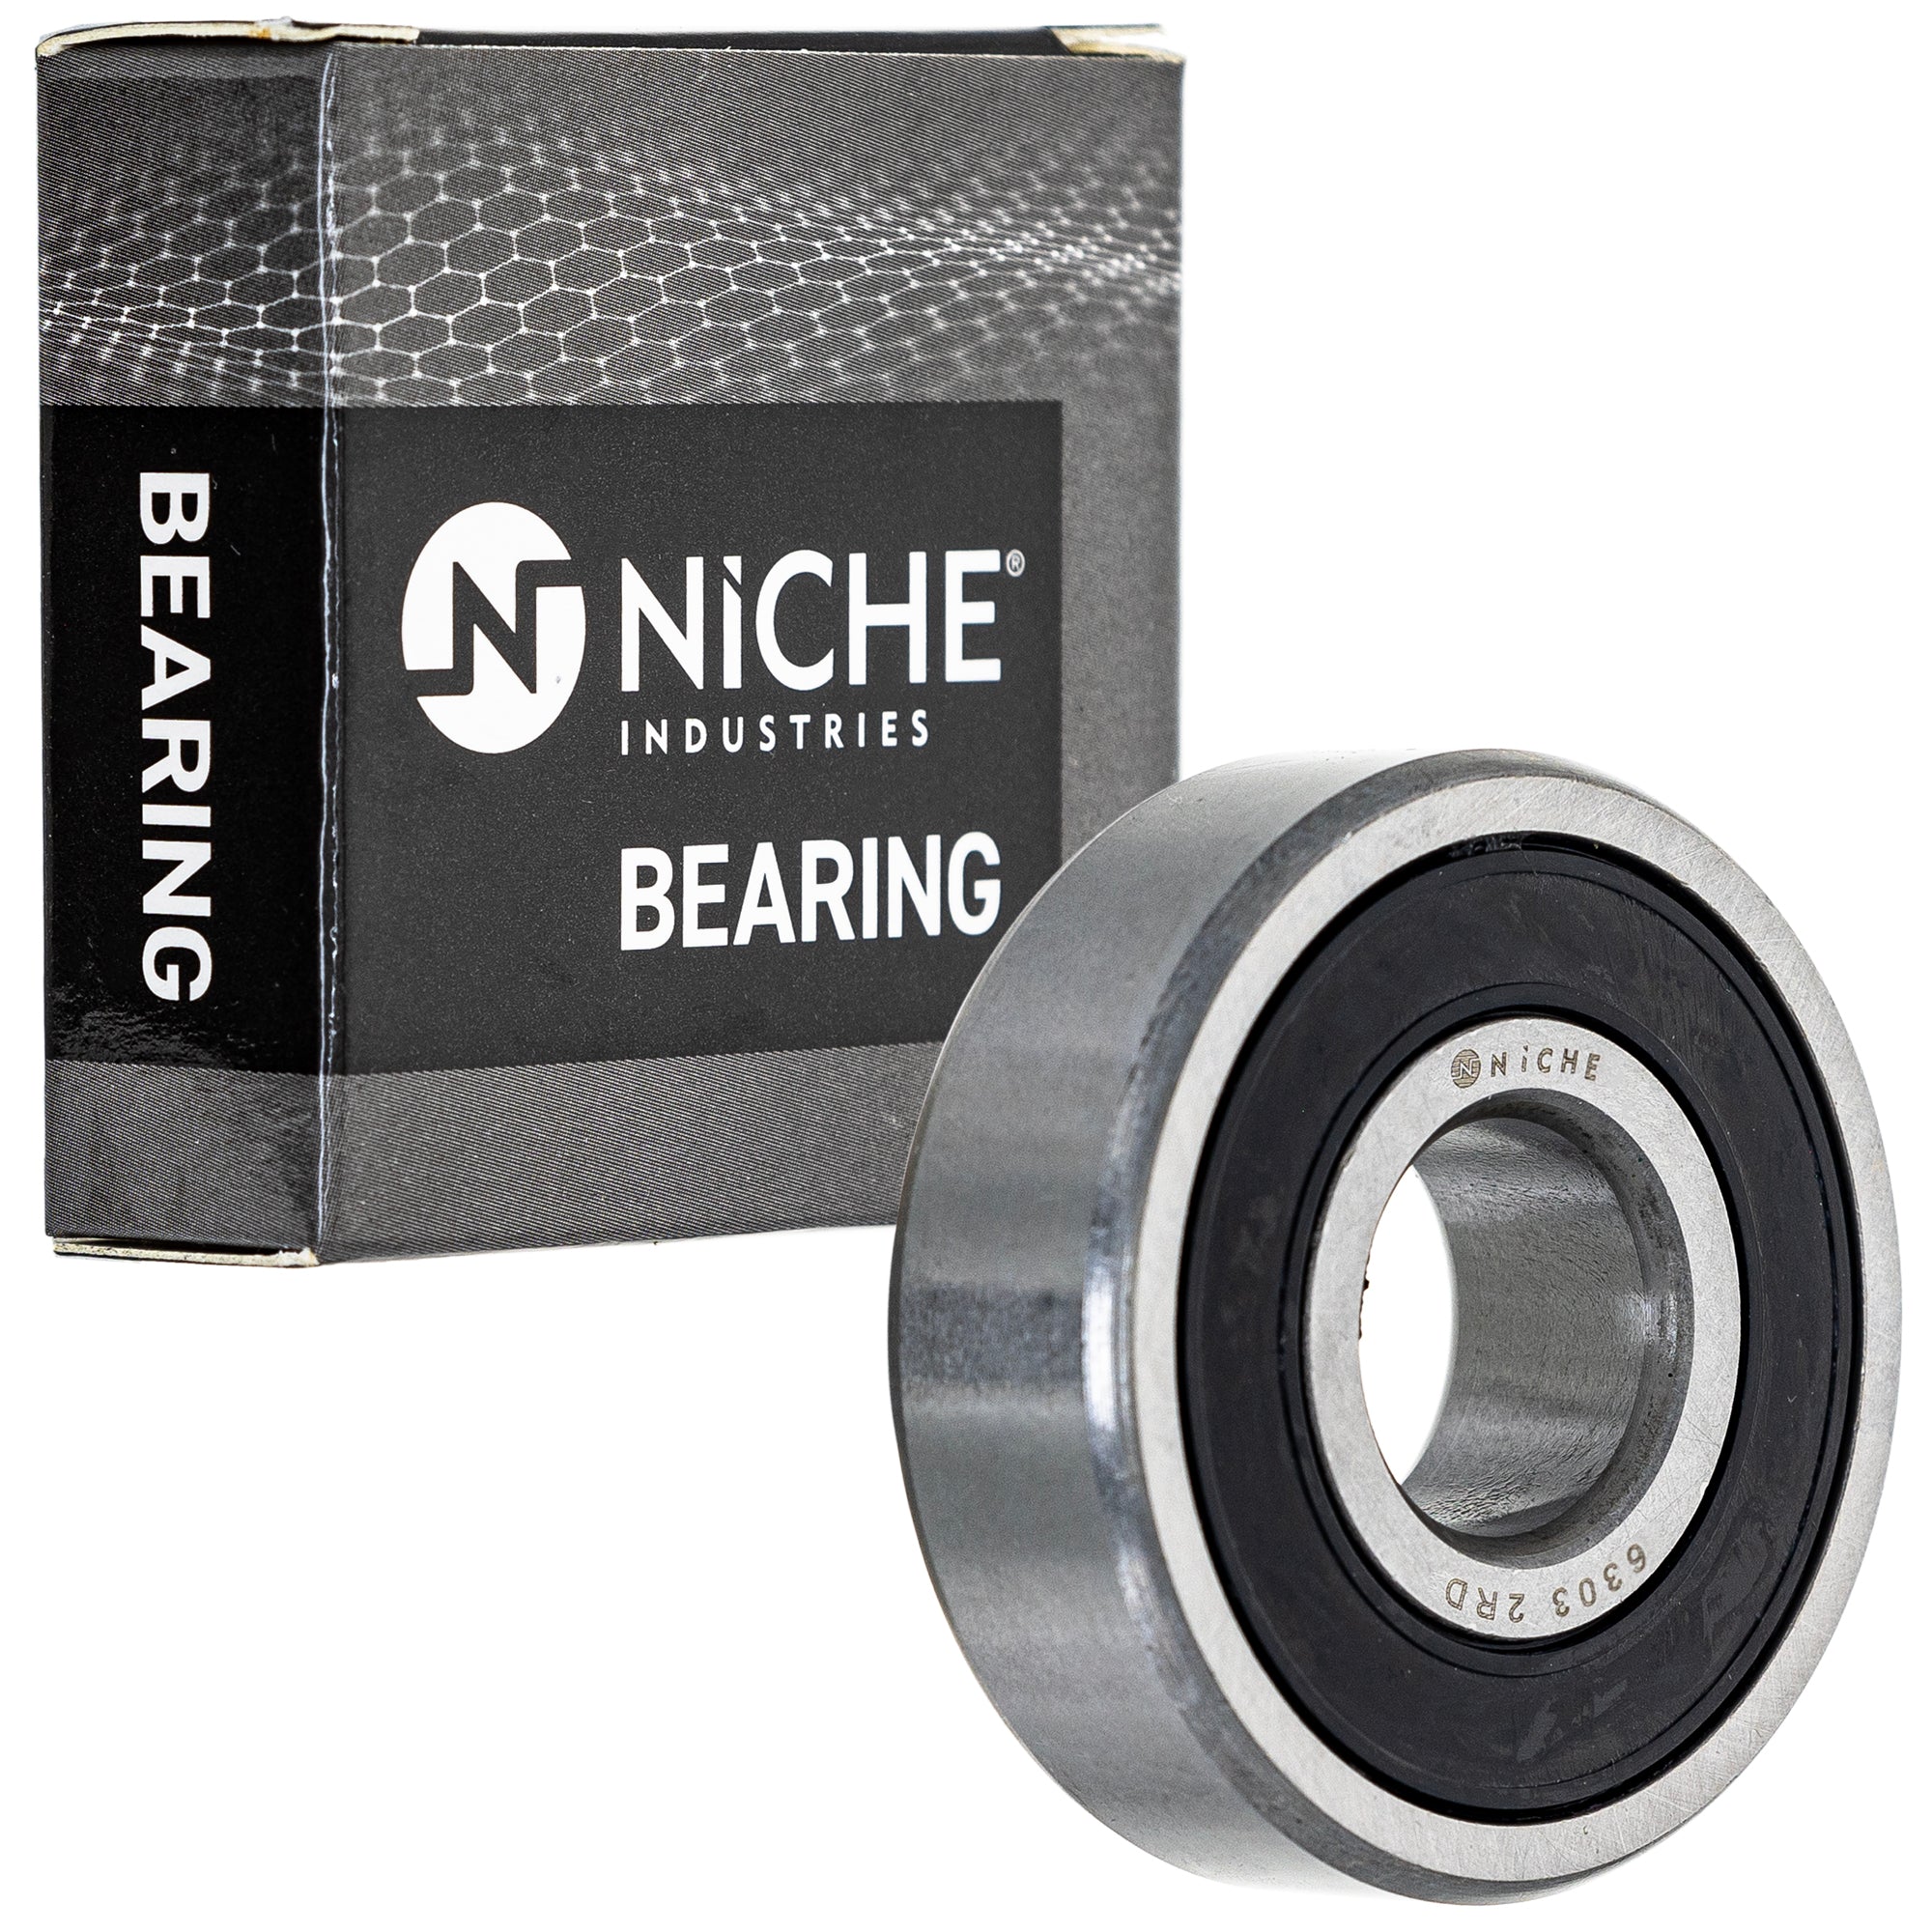 NICHE 519-CBB2214R Bearing 2-Pack for zOTHER XR80R XR80 XR75 XR70R